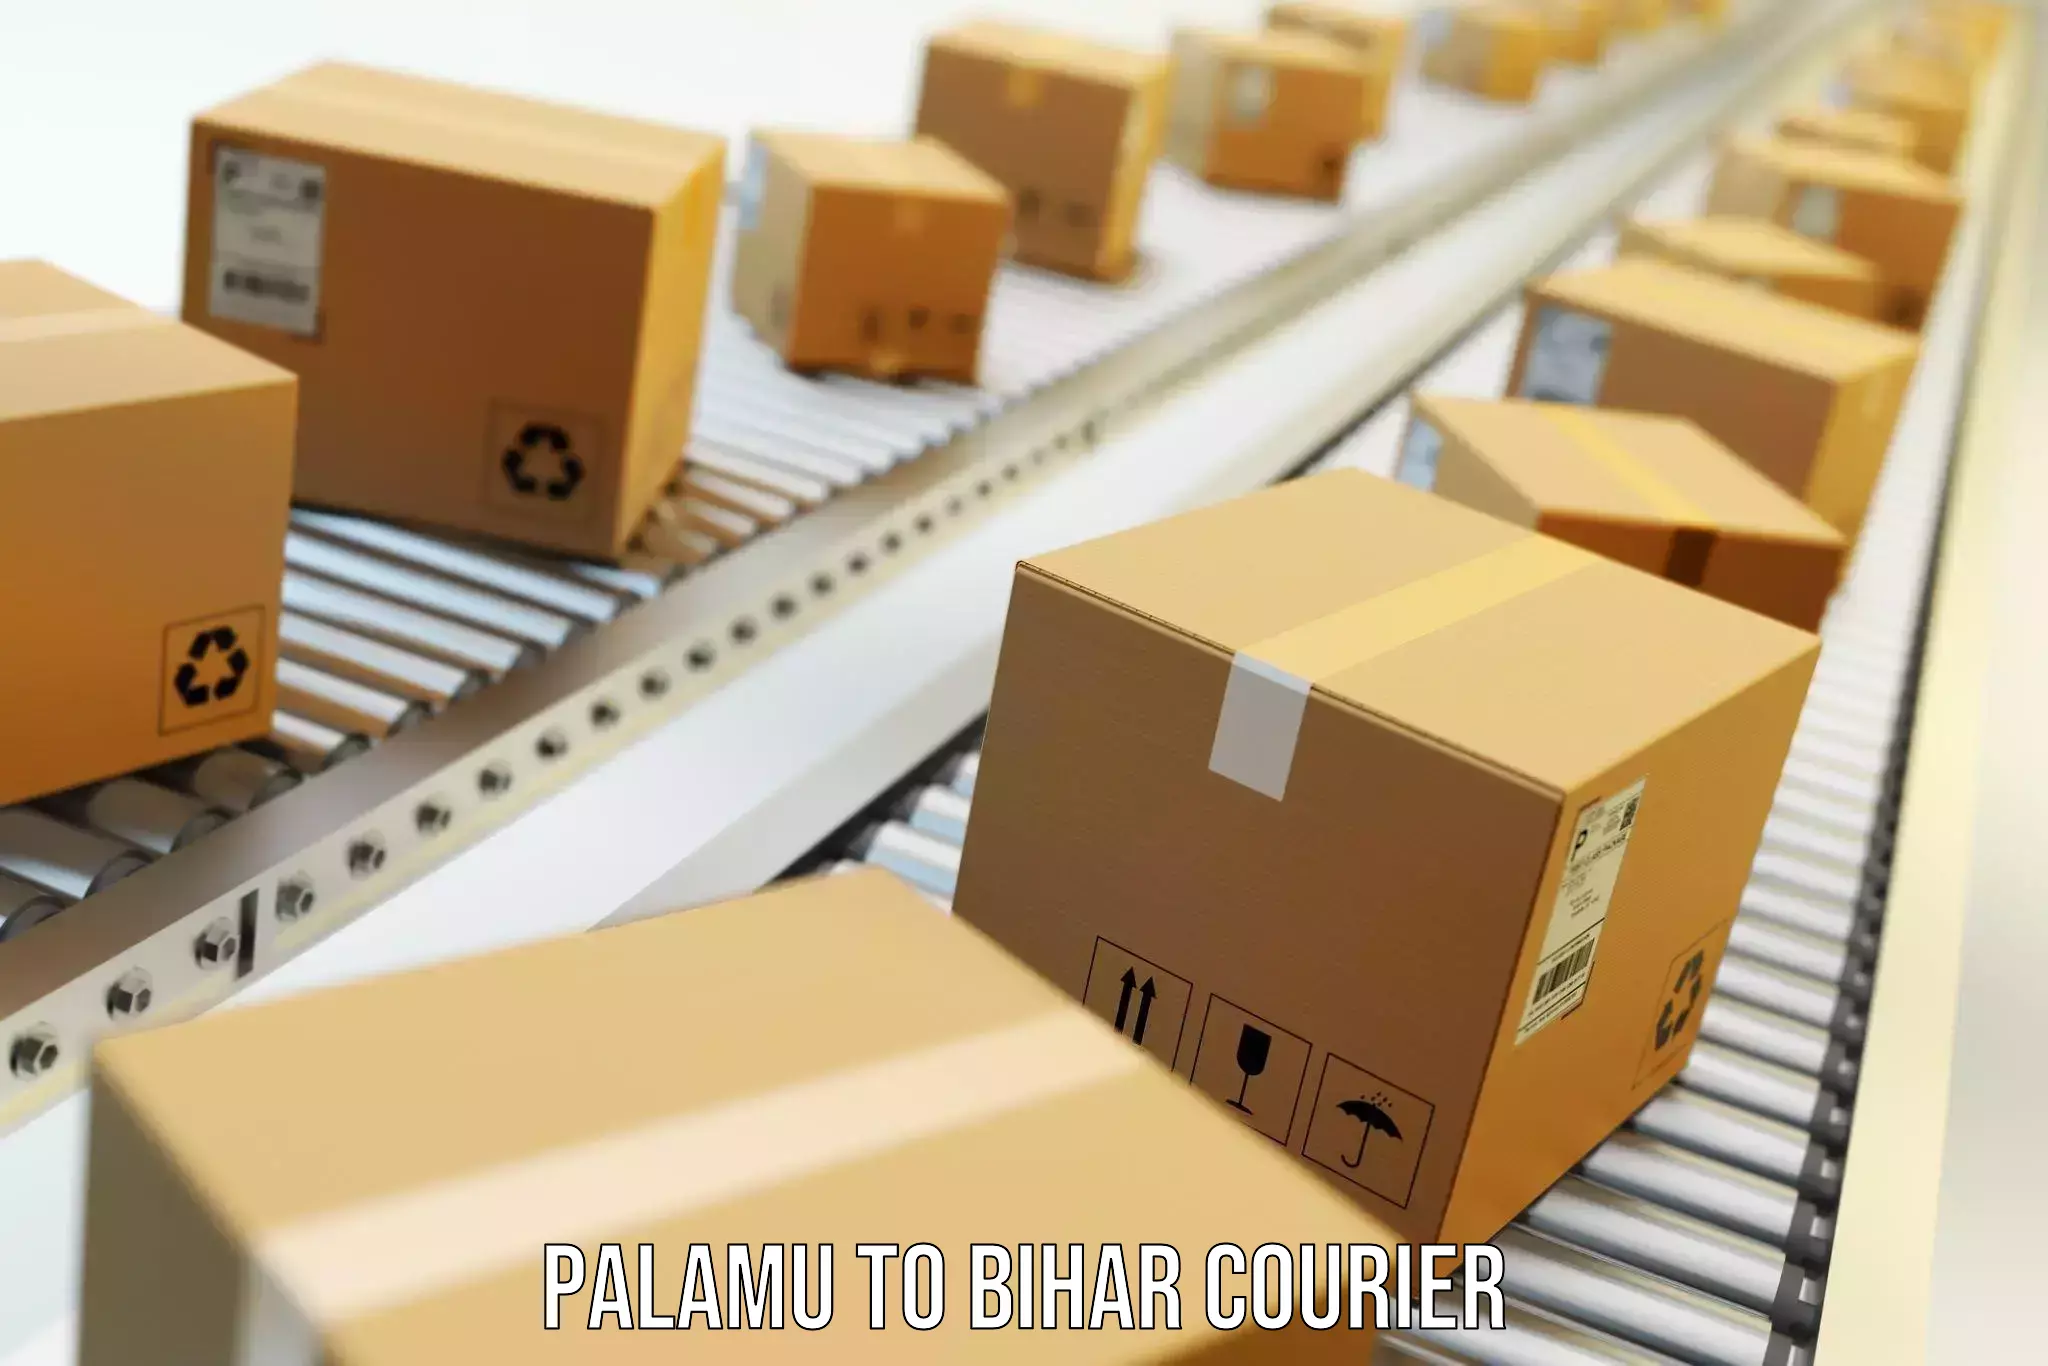 Quality moving and storage Palamu to Barh